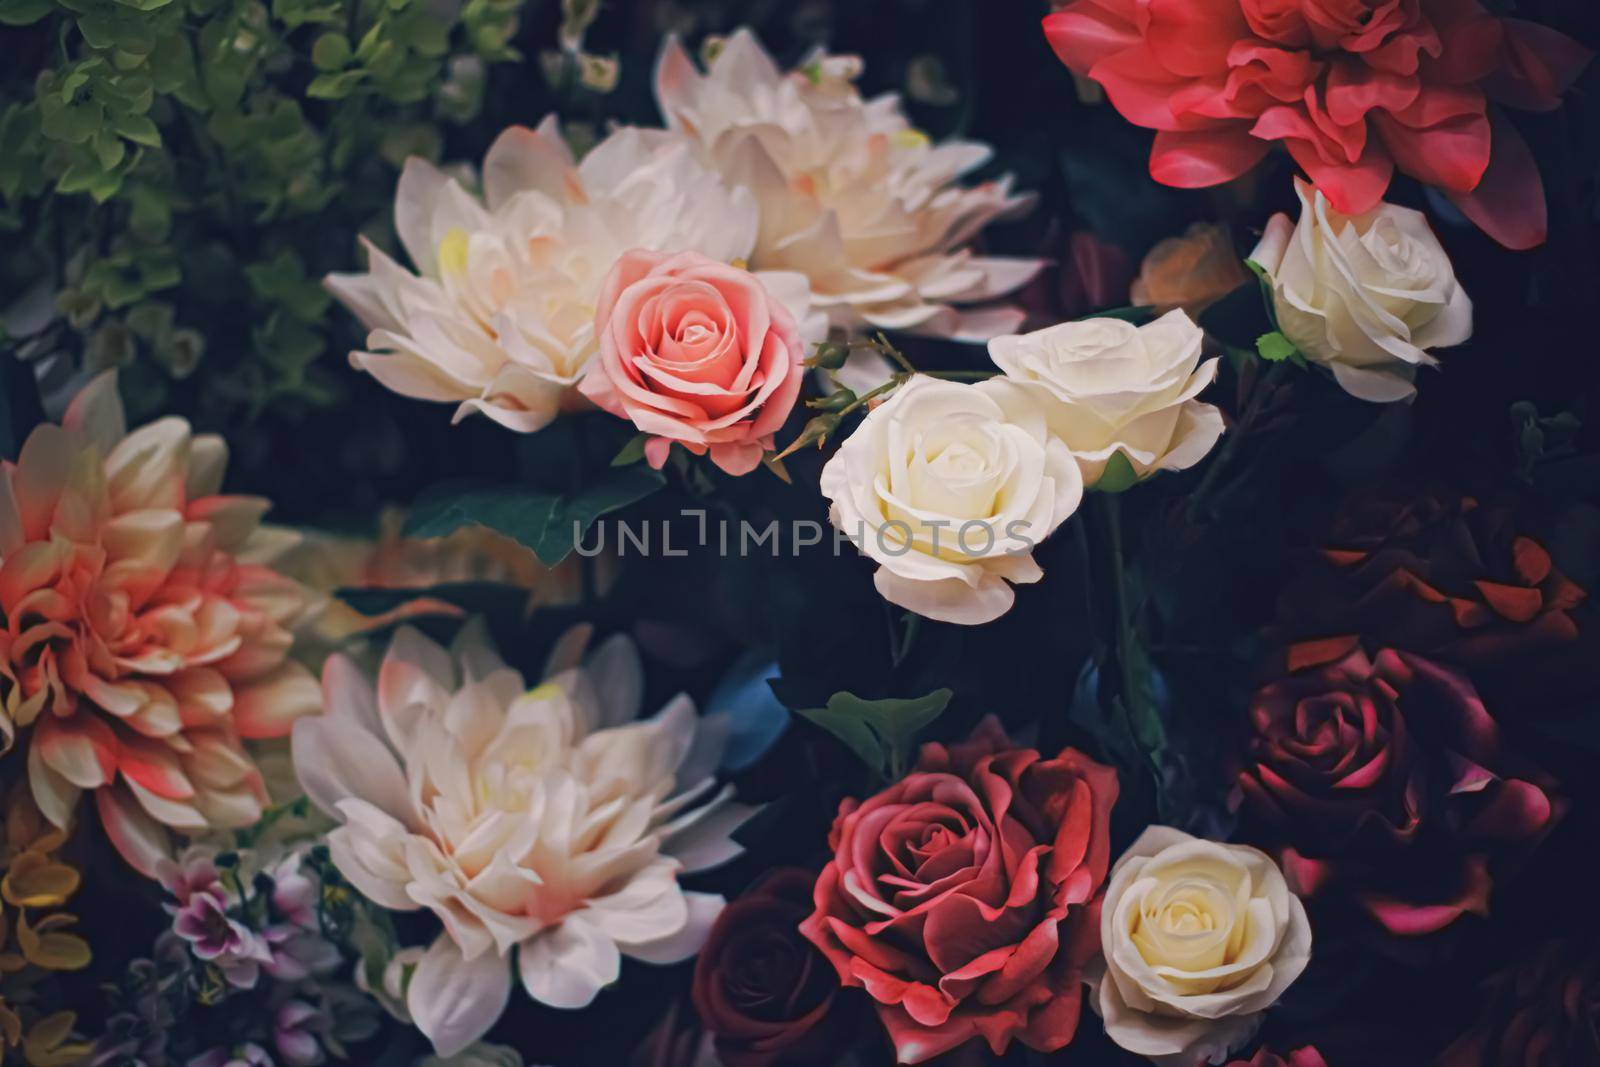 Flower arrangement as floral decoration for wedding and flowers shop decor concept